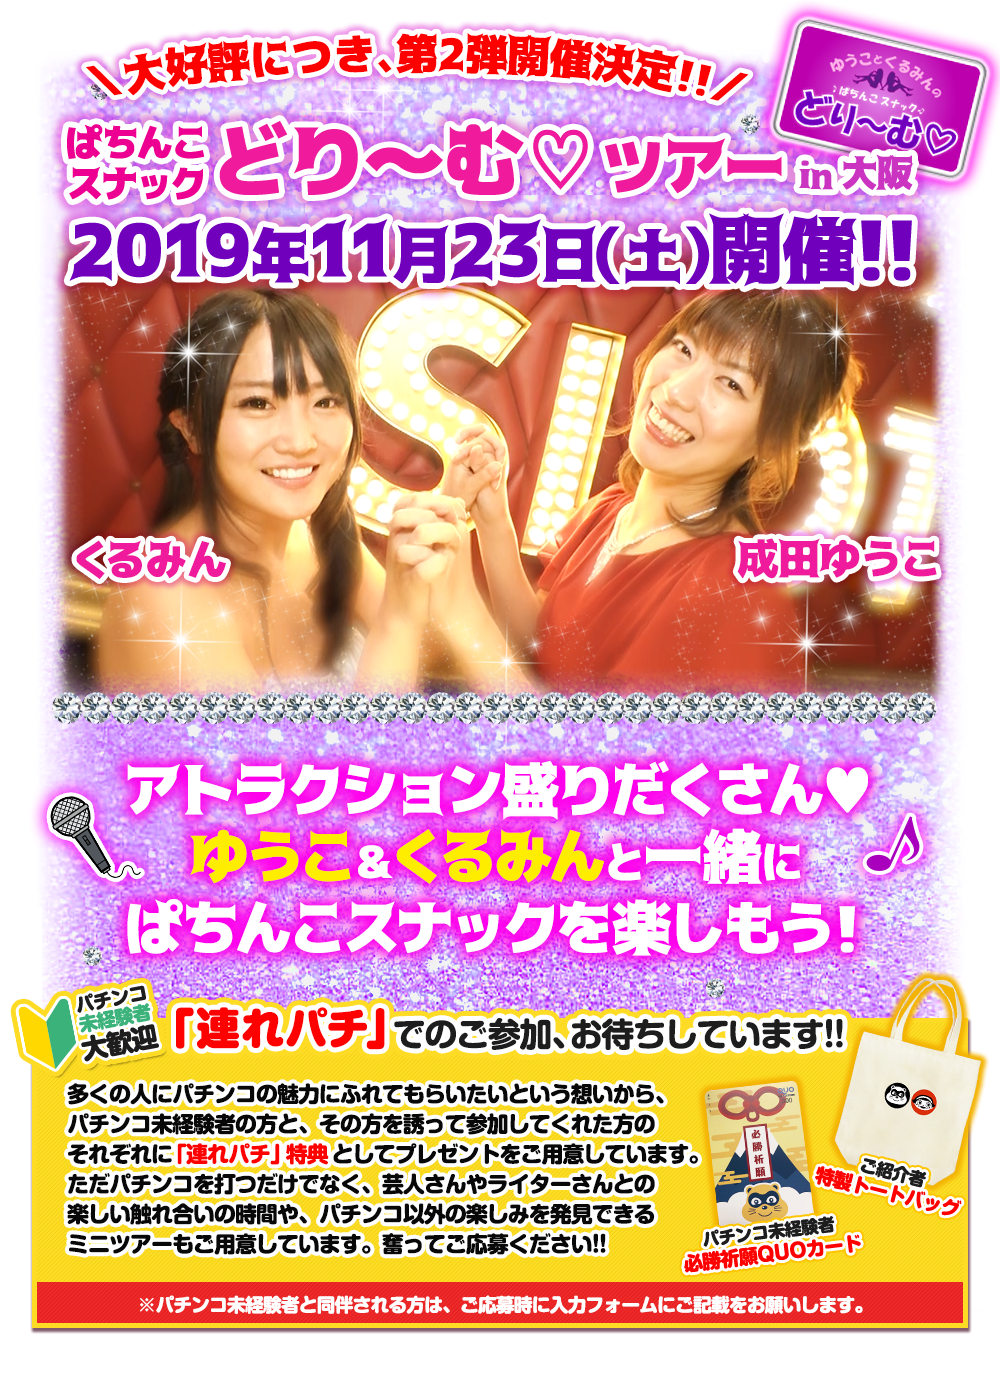 11/23 ぱちんこツアー in 大阪